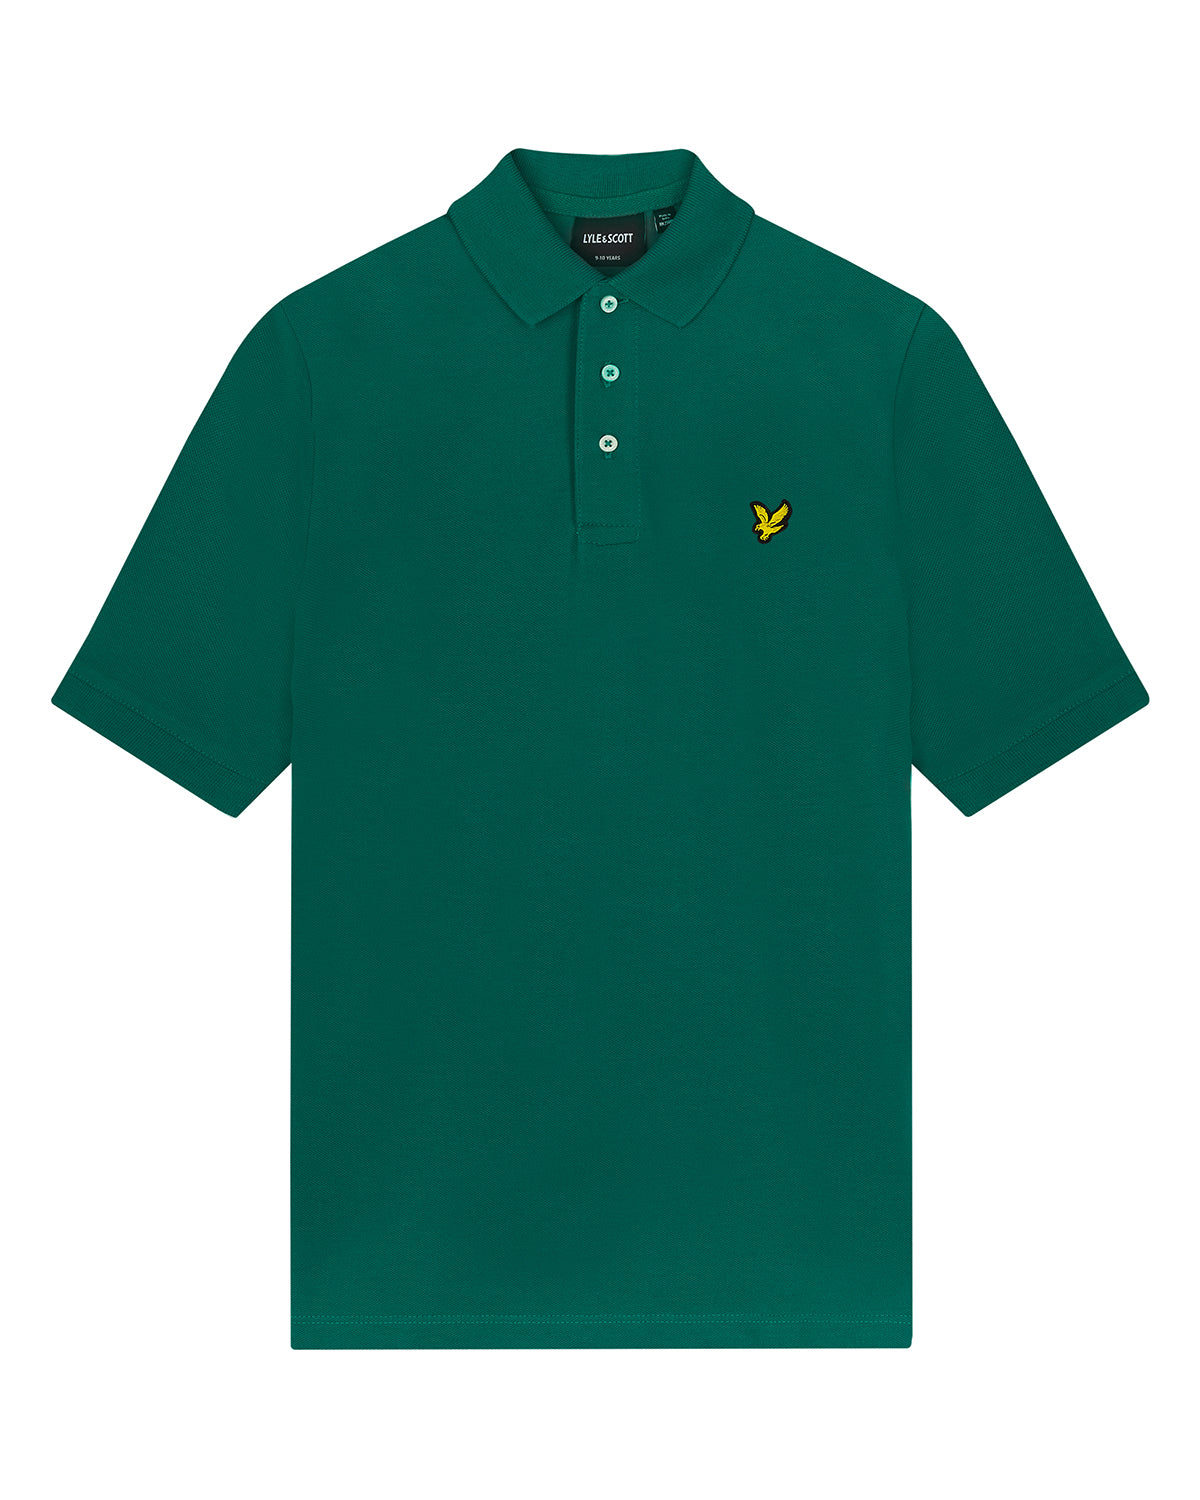 Jongens Plain Polo Shirt van Lyle & Scott in de kleur X154 Court Green in maat 170-176.